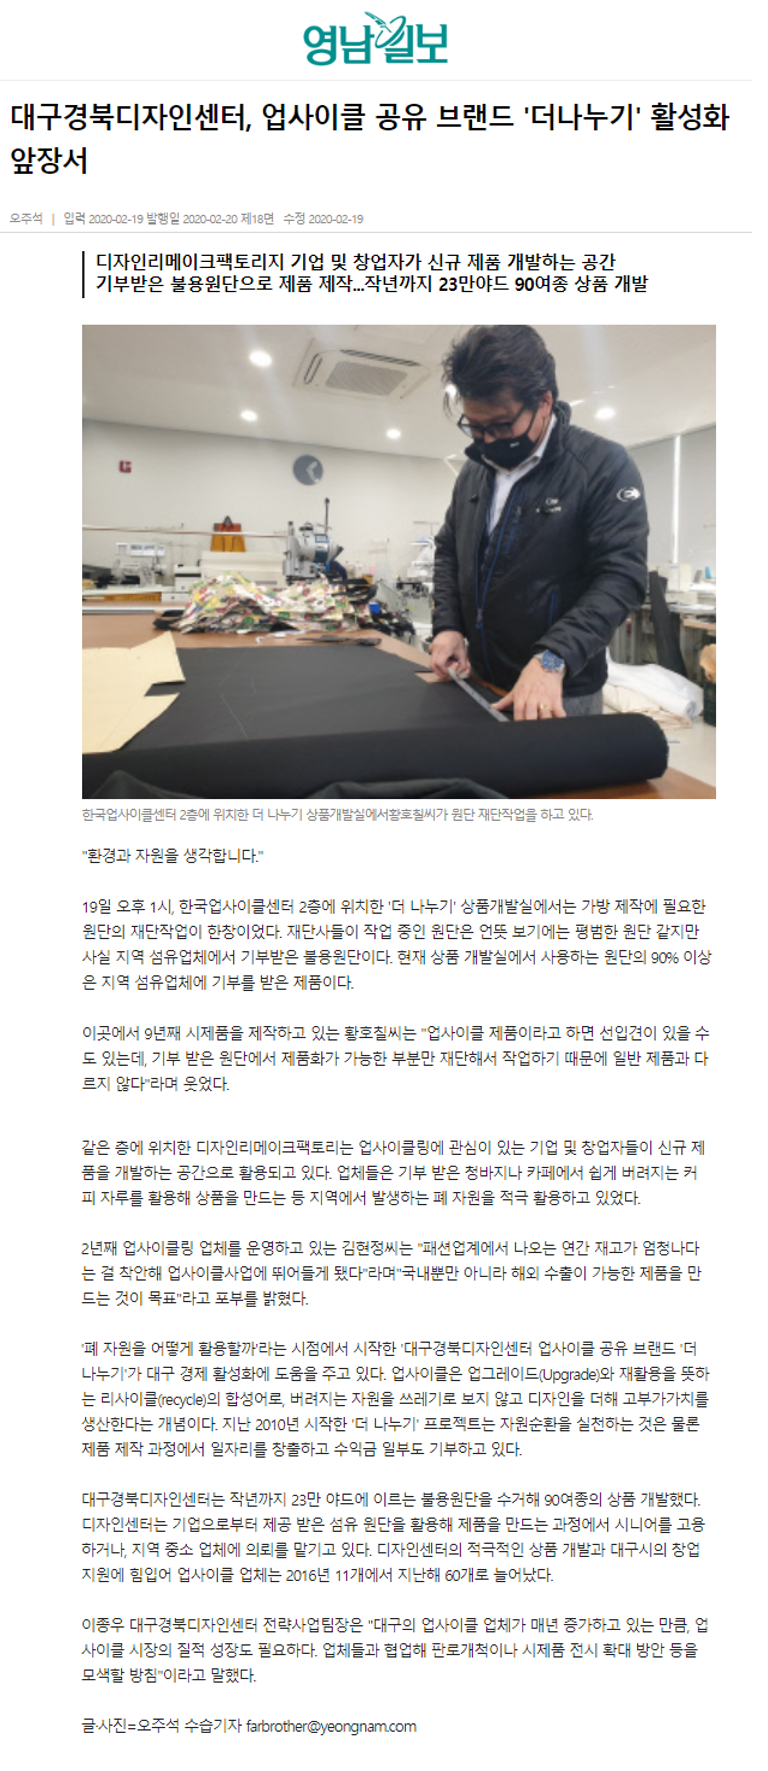 200220_(영남일보)대구경북디자인센터, 업사이클 공유 브랜드 '더나누기' 활성화 앞장서.png